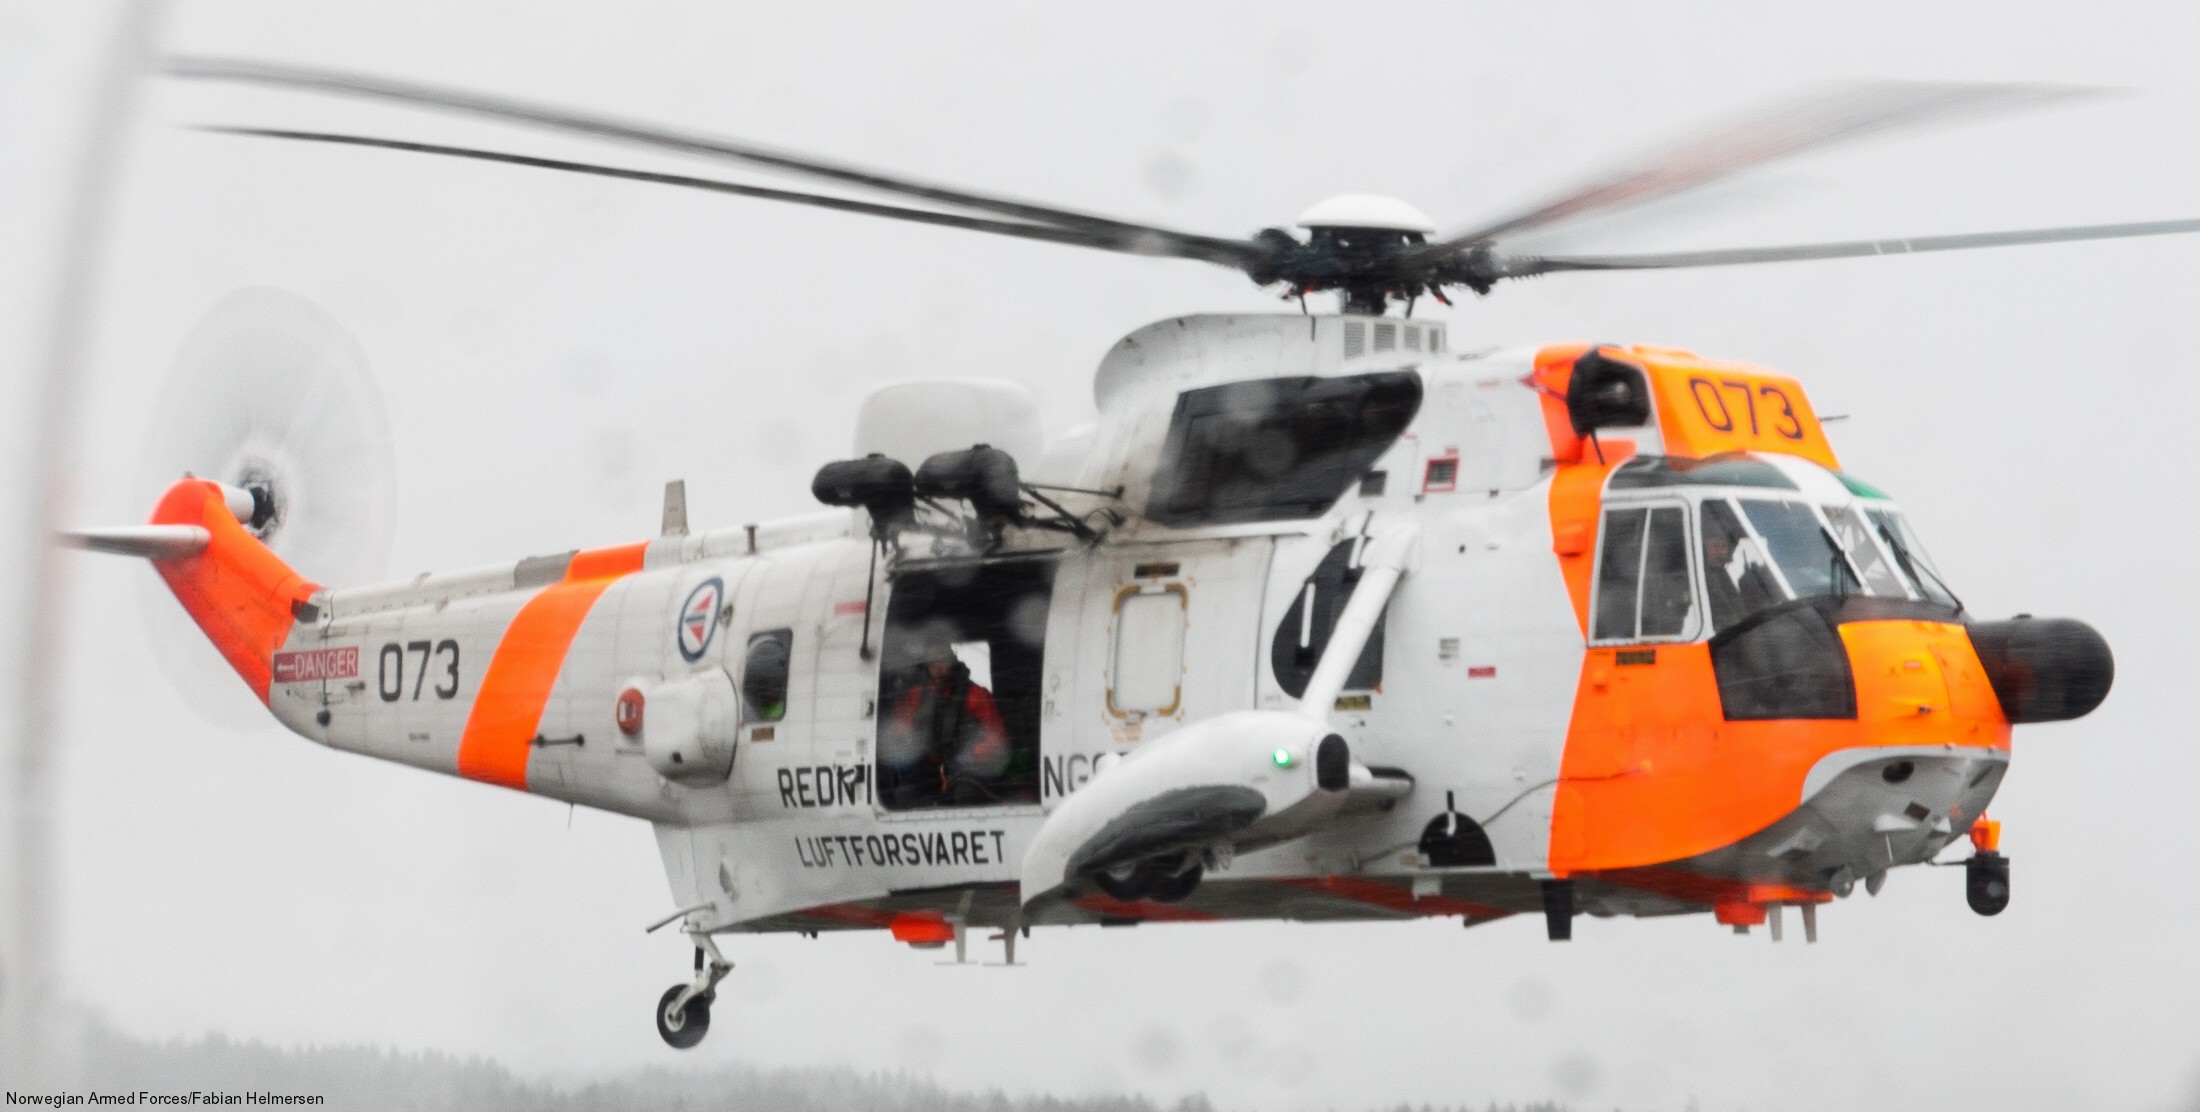 westland ws-61 sea king royal norwegian air force sar rescue 330 squadron skvadron luftforsvaret 073 07